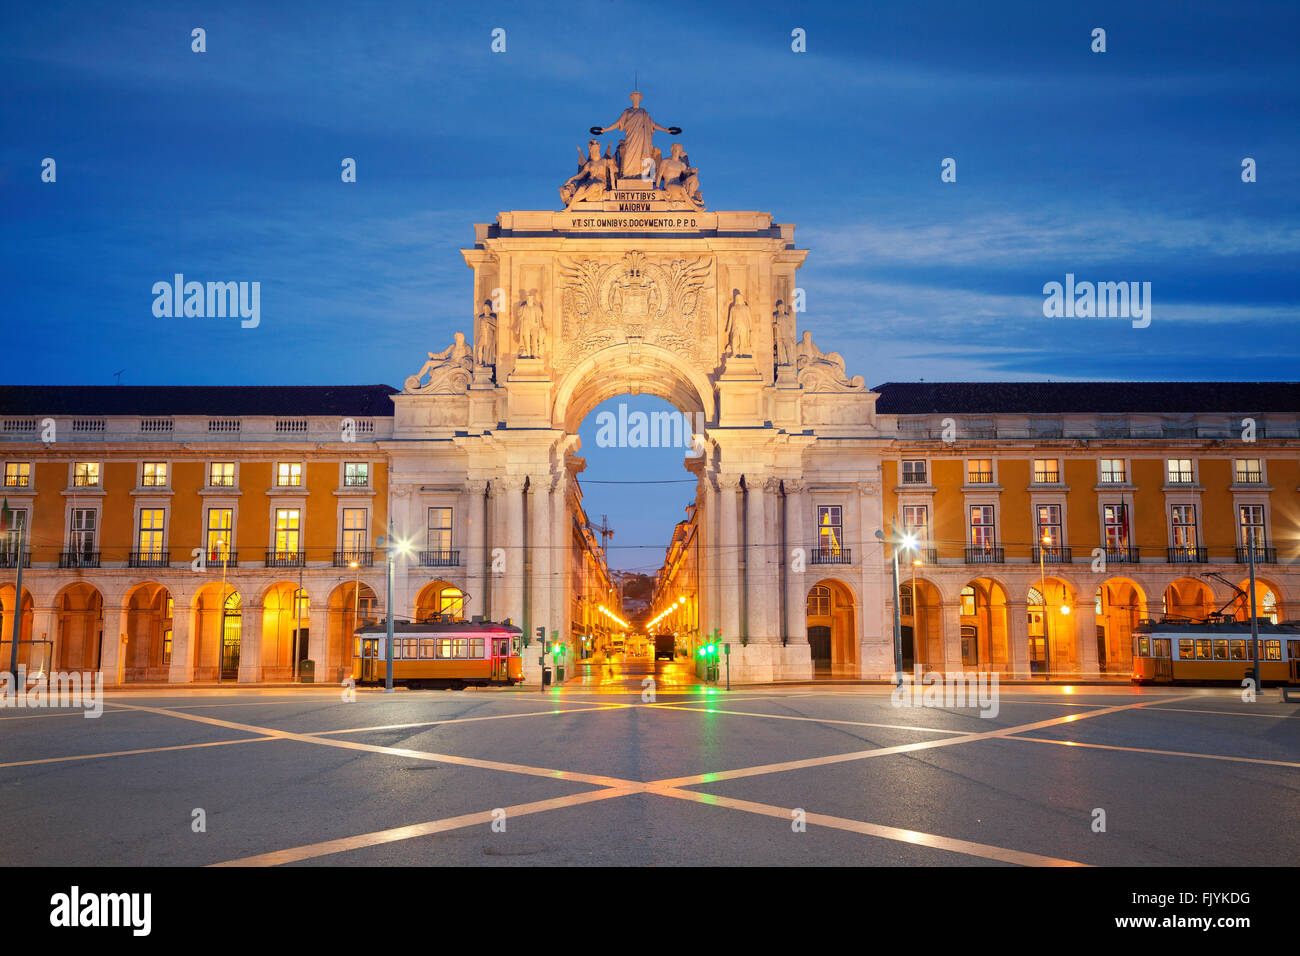 Lisbonne. Image de l'Arc de Triomphe à Lisbonne, Portugal. Banque D'Images